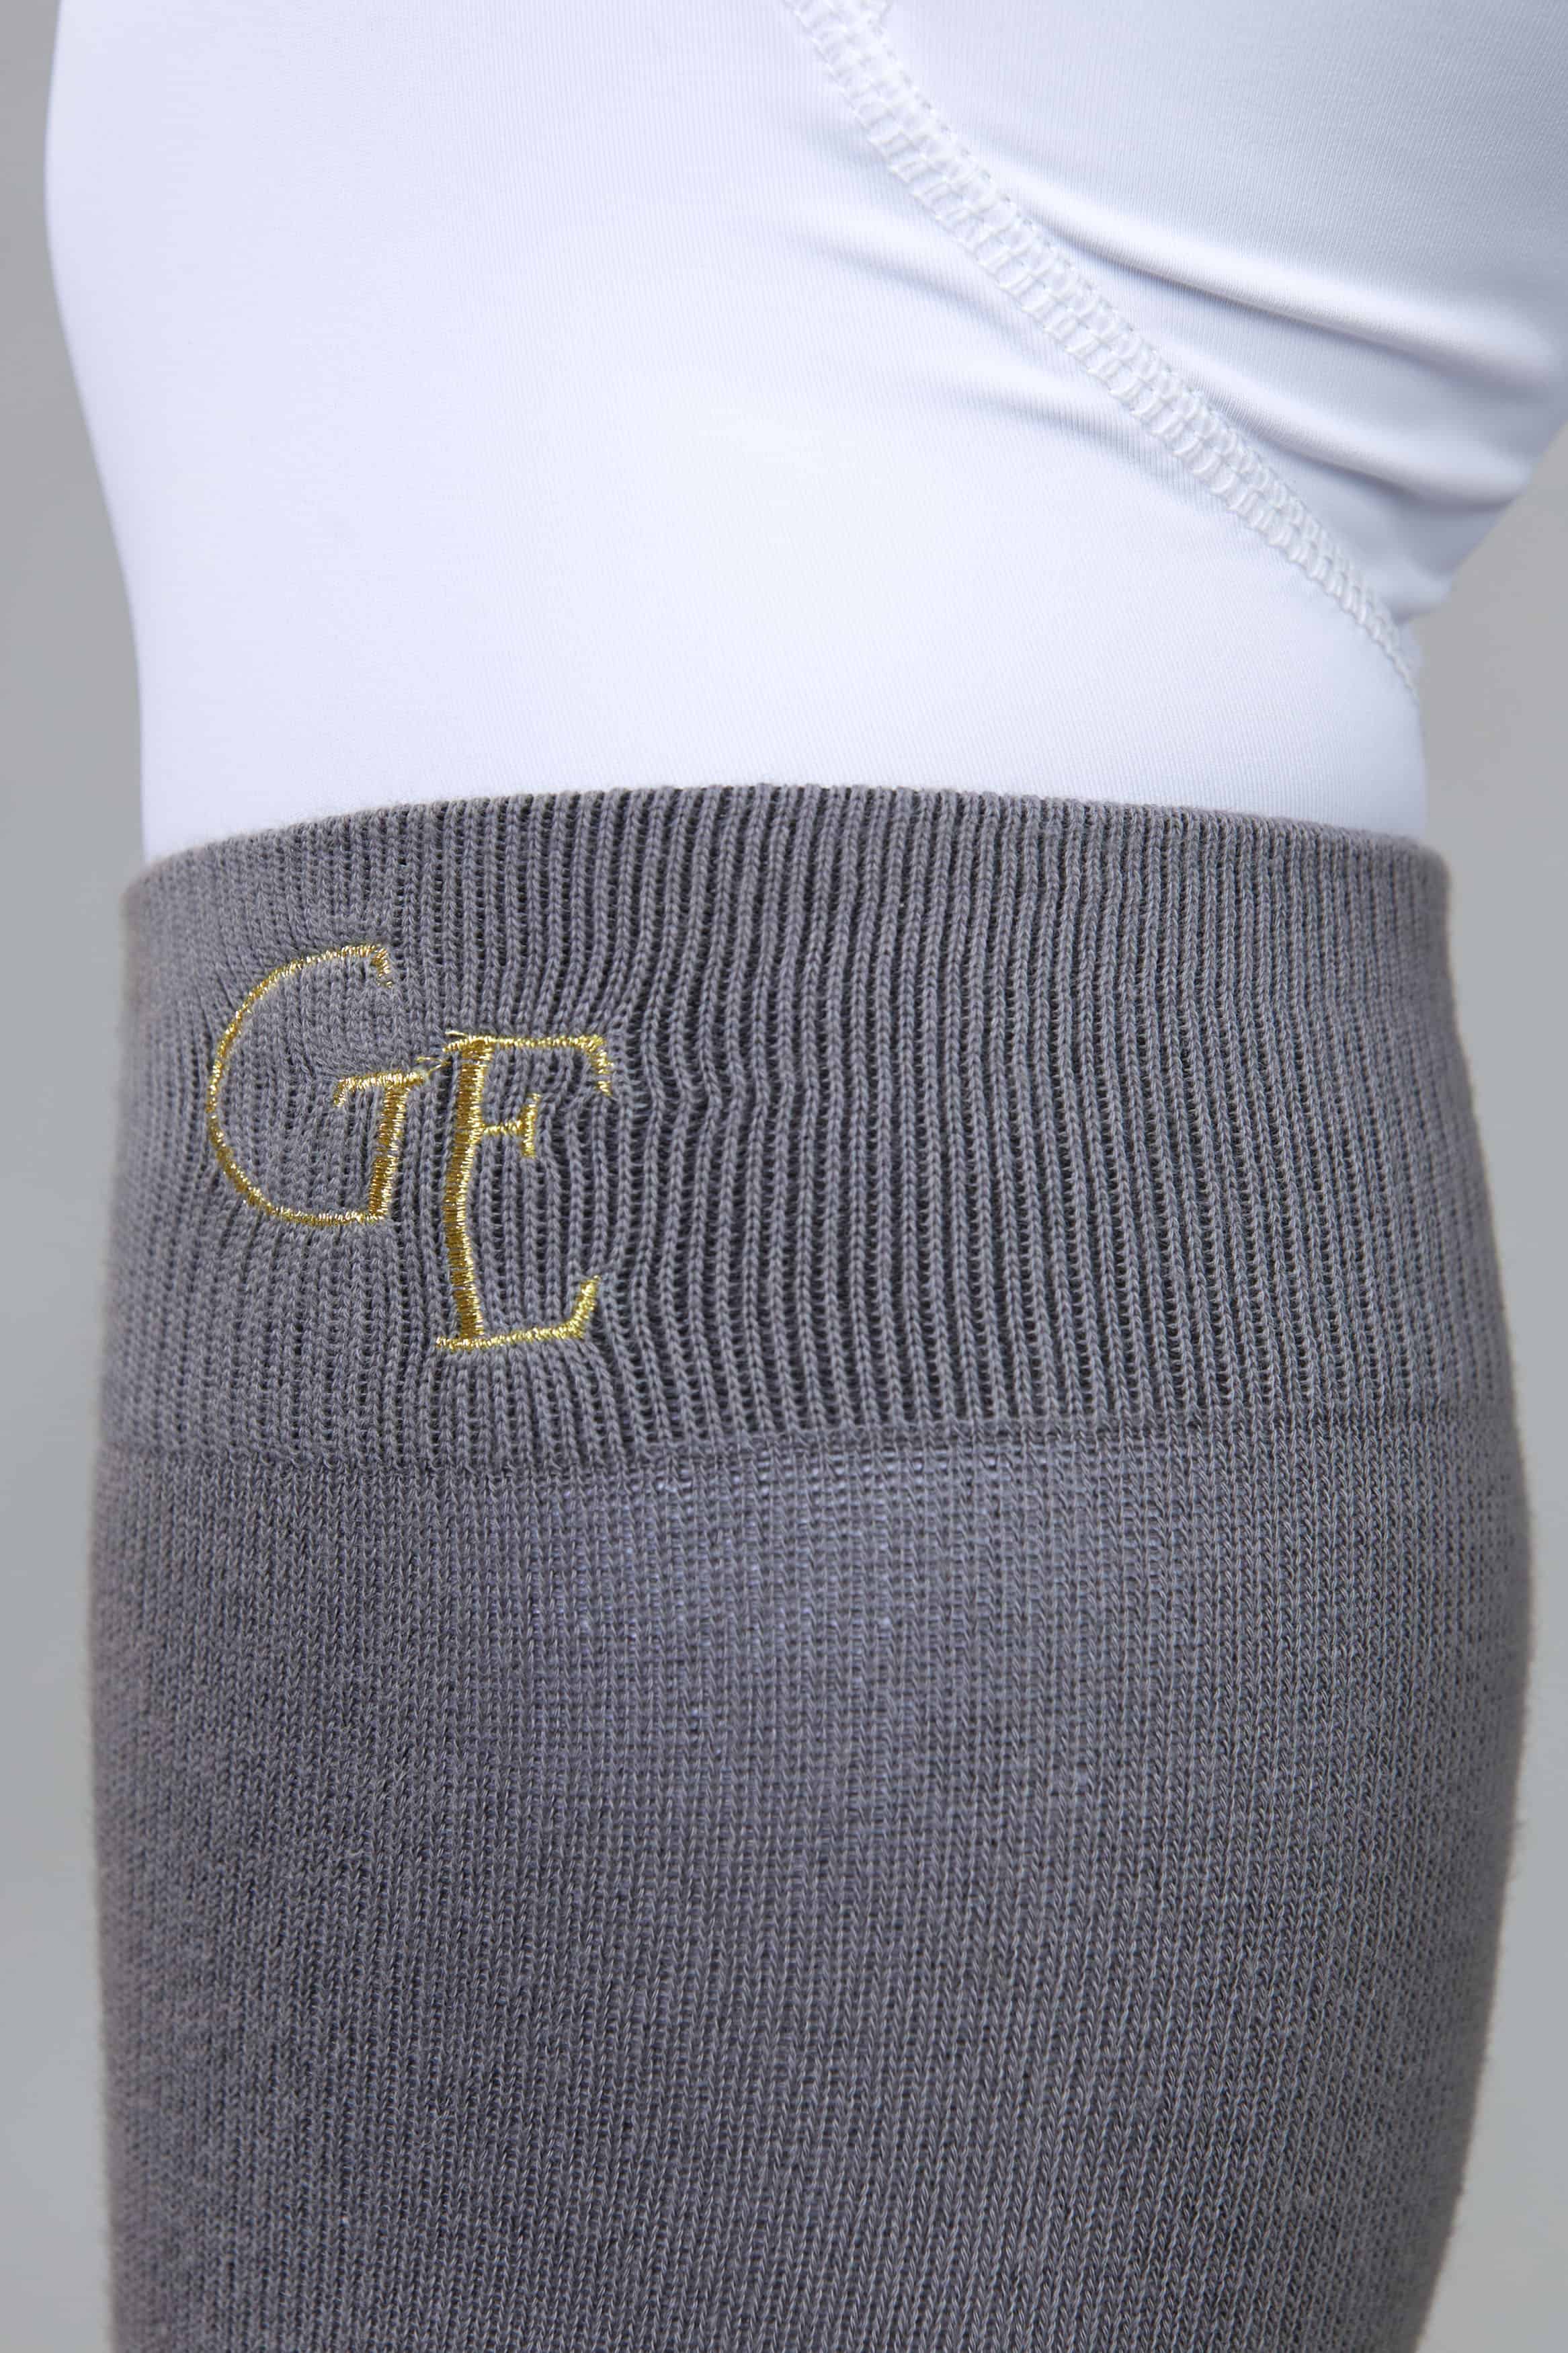 A close up of the gold G E logo on the top of our grey equestrian socks.